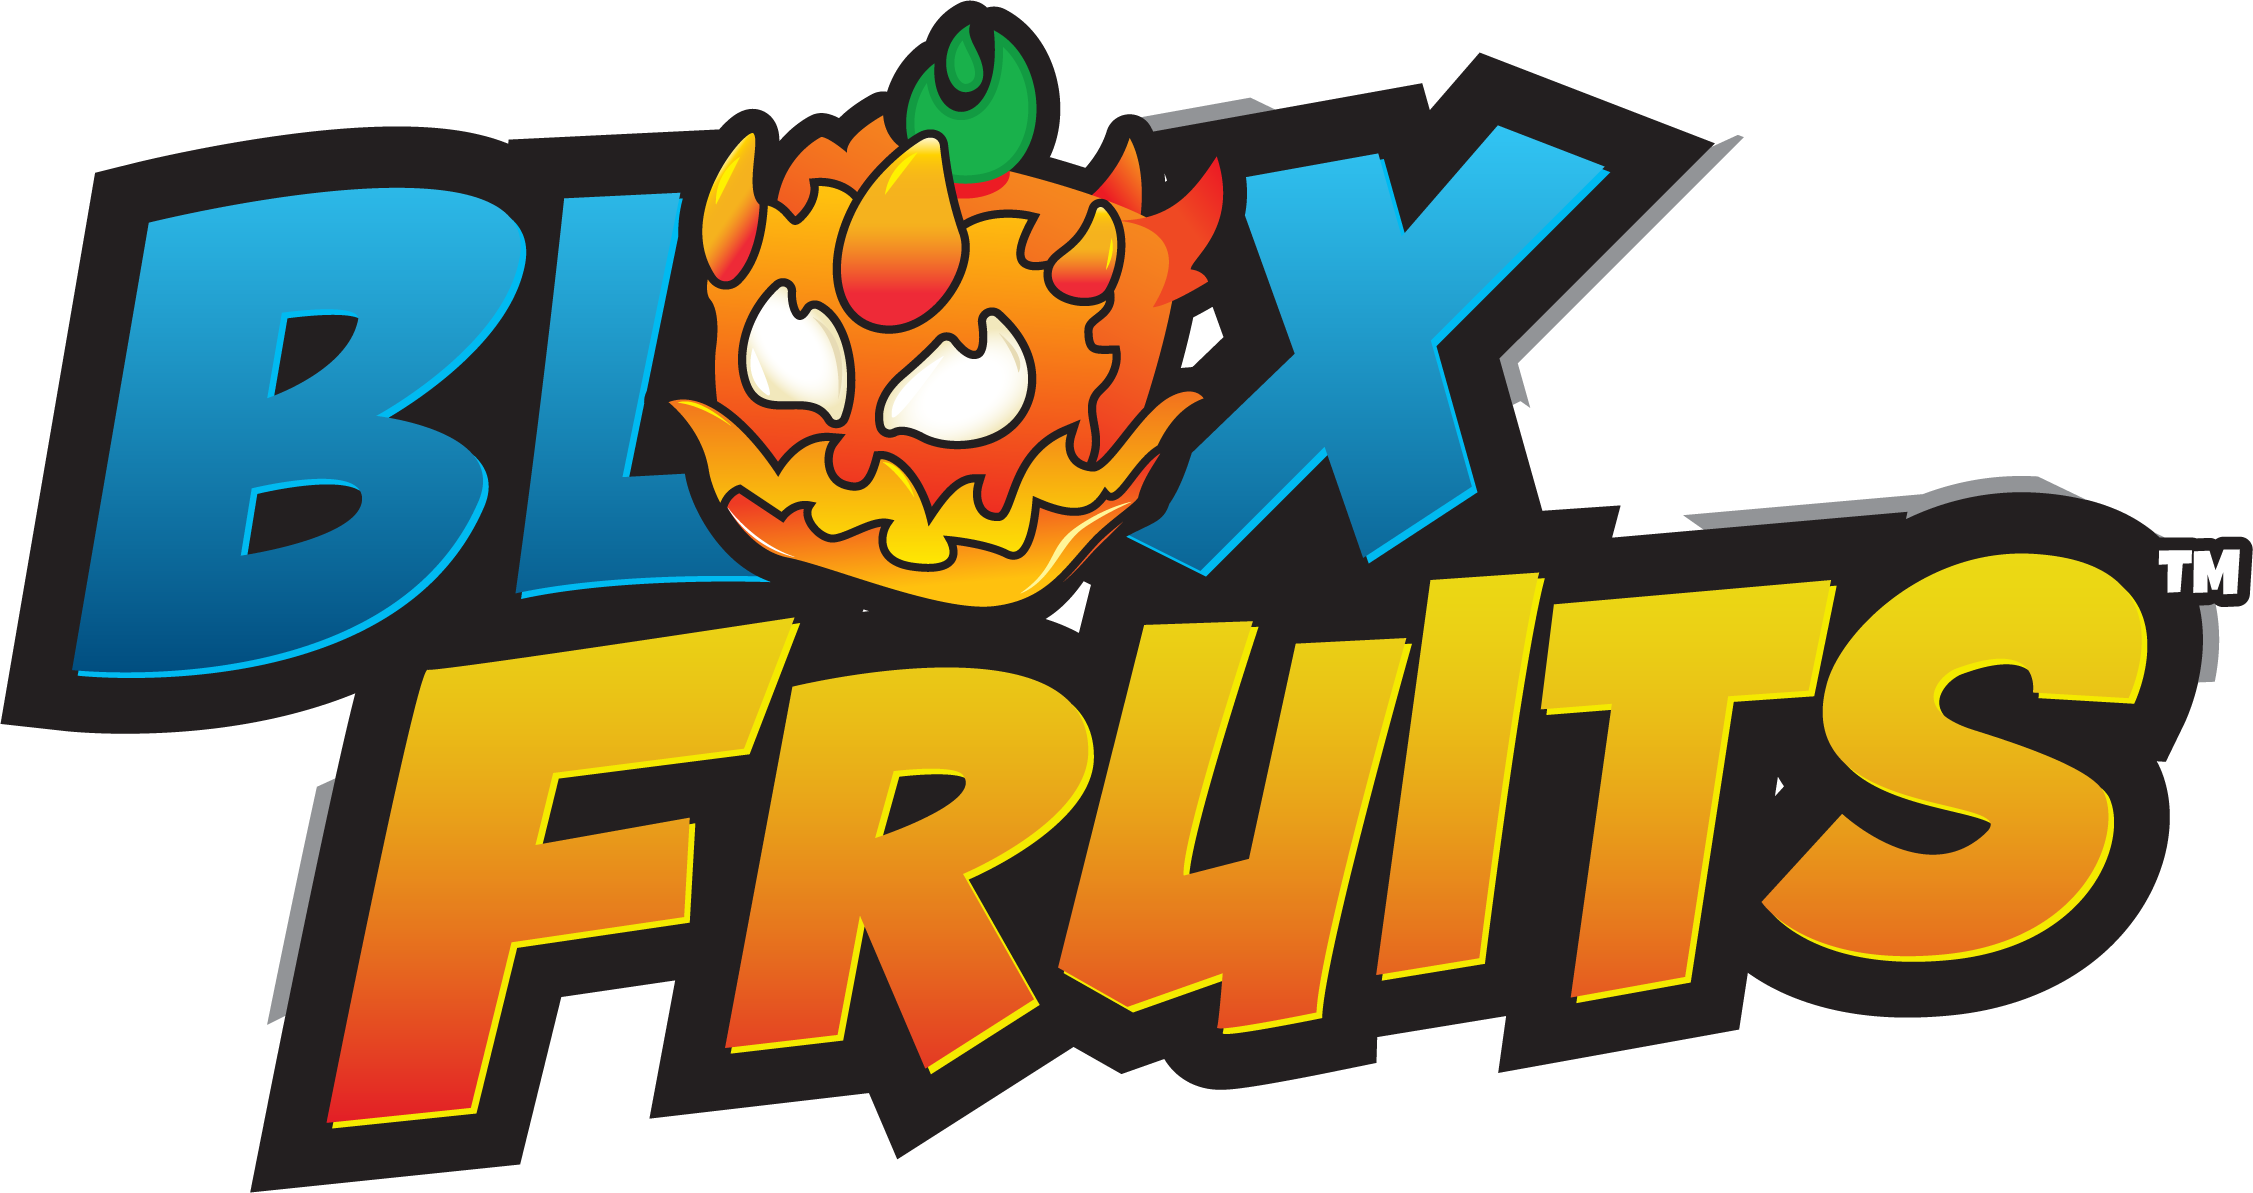 🎂 September Update v17.3 – Blox Fruits